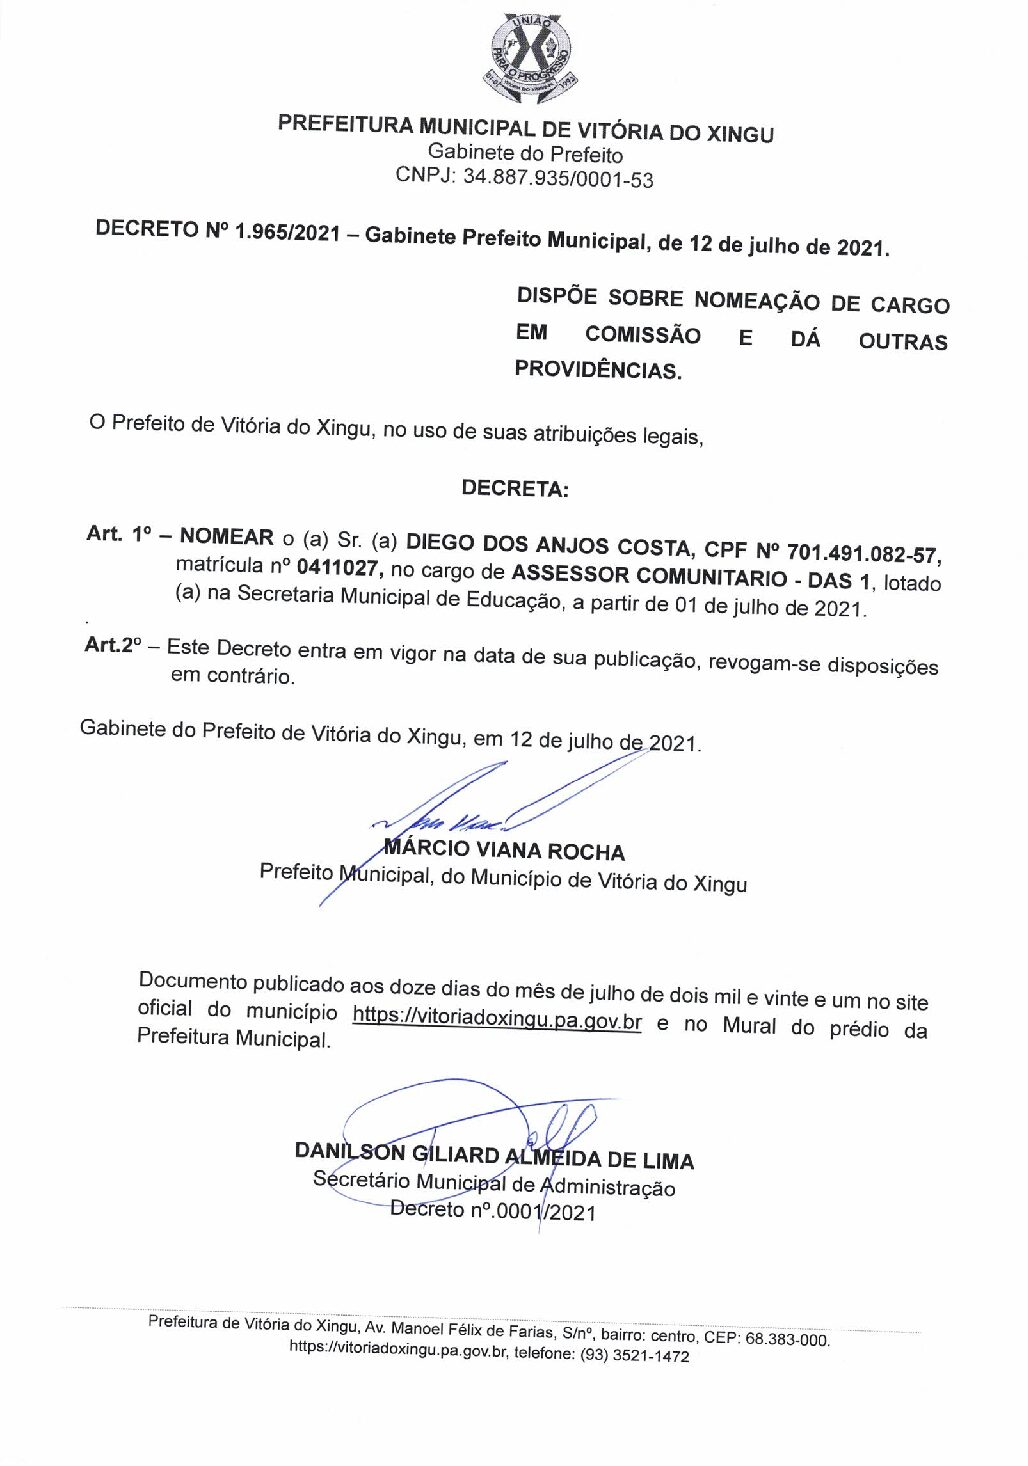 DECRETO Nº1.965-2021 - DIEGO DOS ANJOS COSTA - Prefeitura Municipal de  Vitória do Xingu